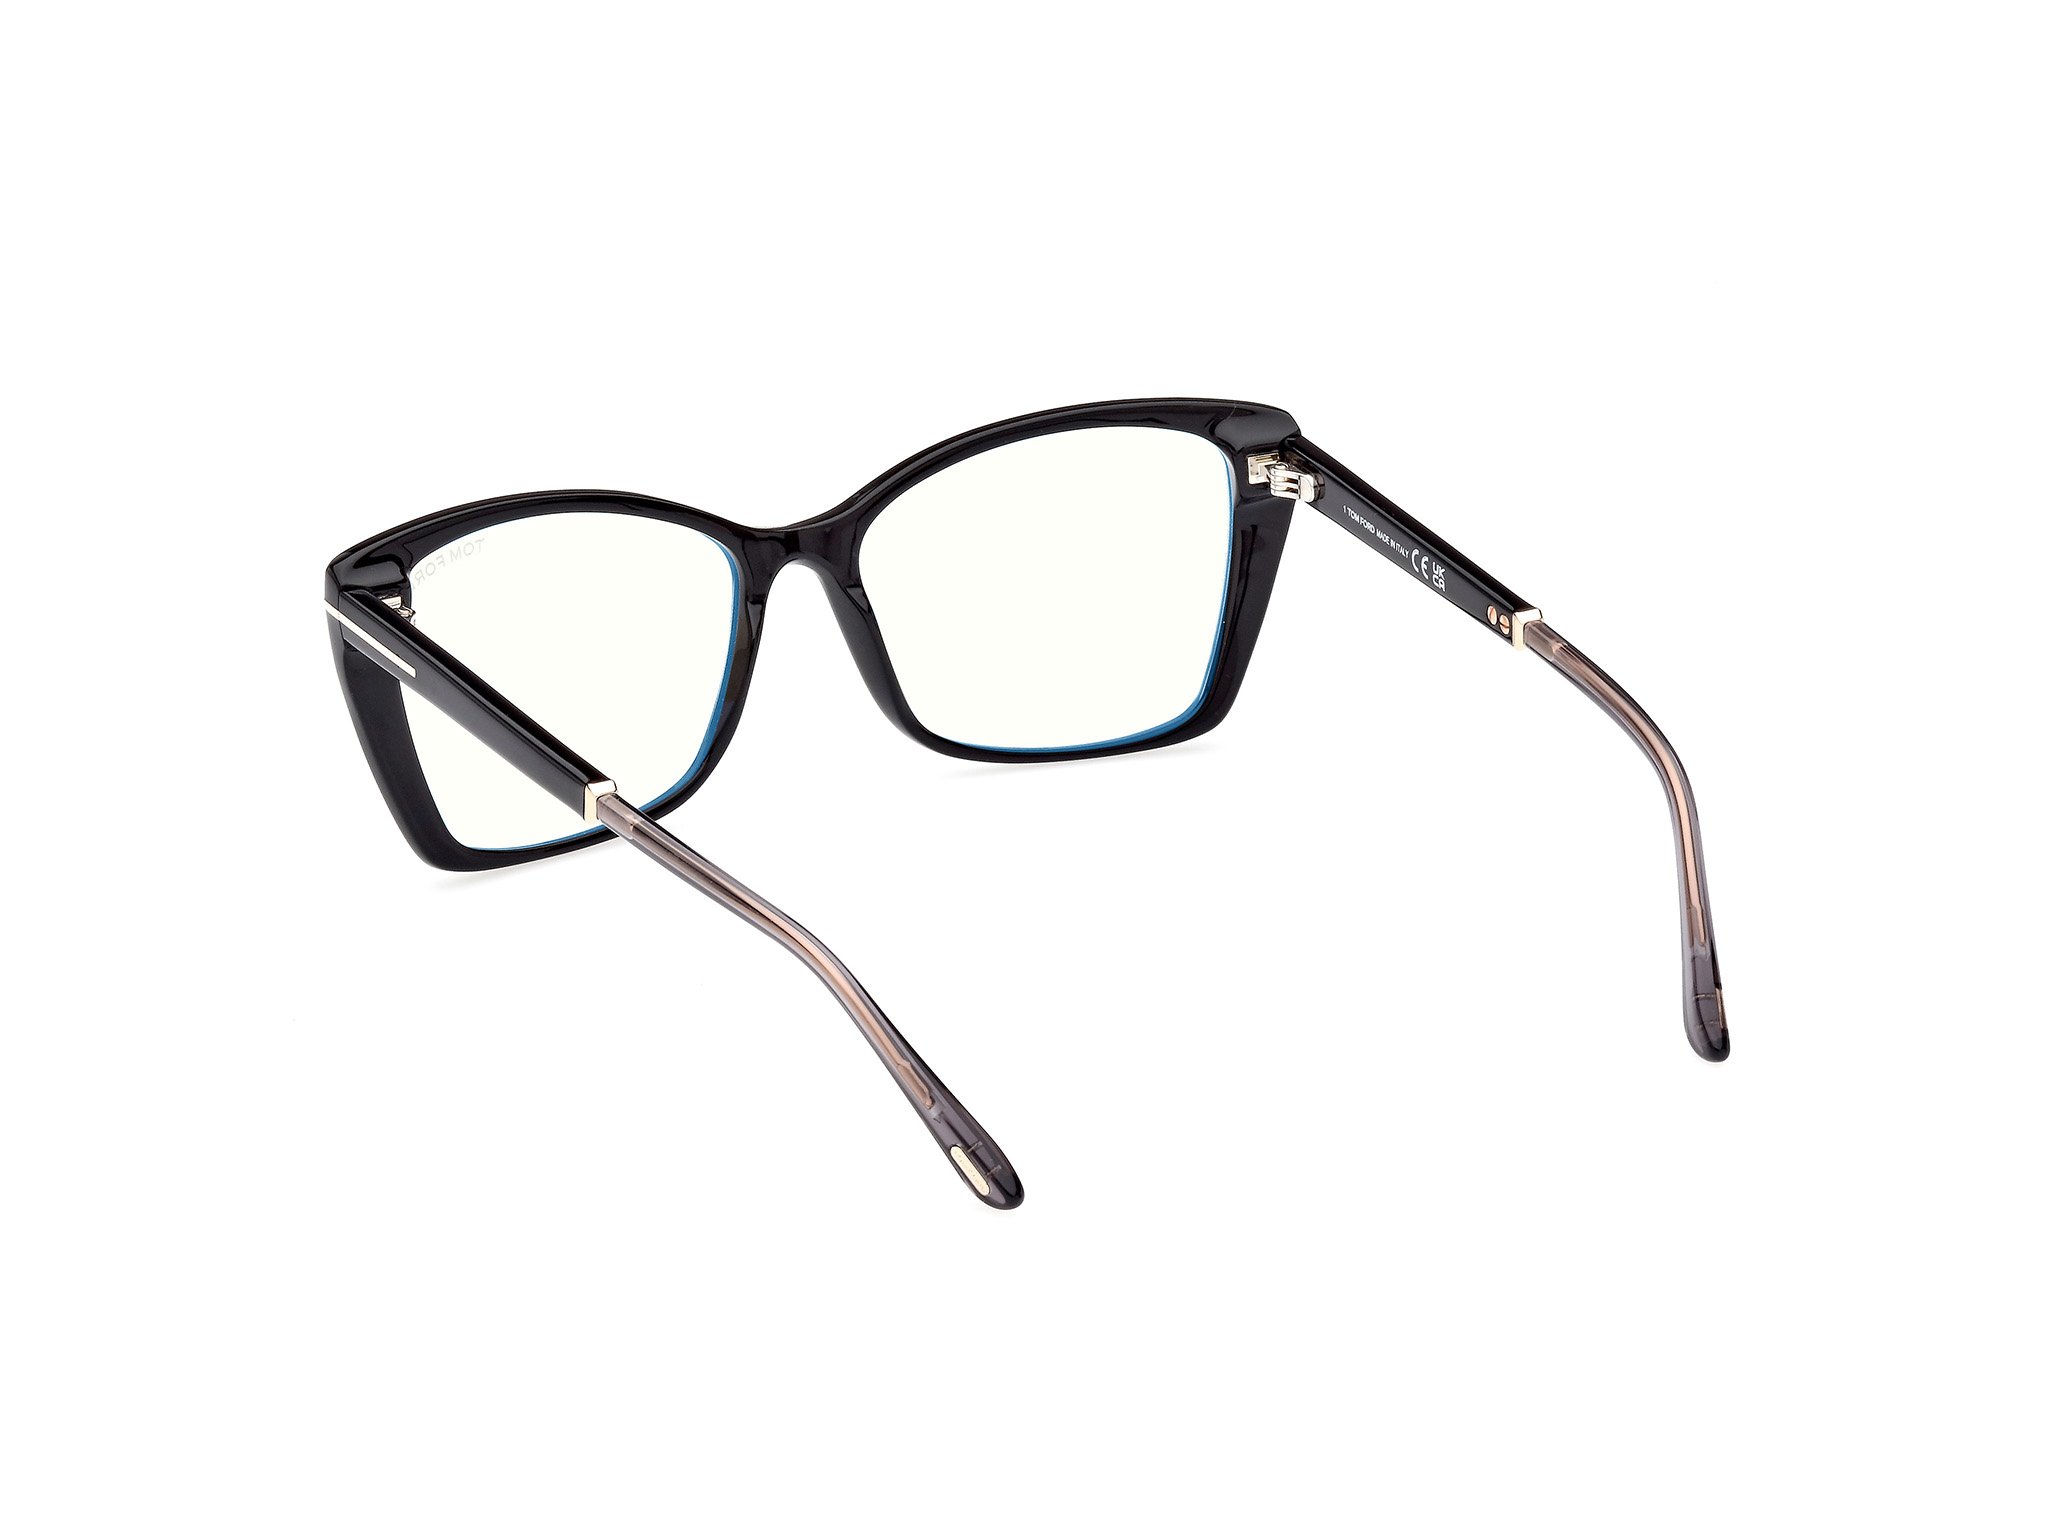 Das Bild zeigt die Korrektionsbrille FT5893-B 001 von der Marke Tom Ford in schwarz.